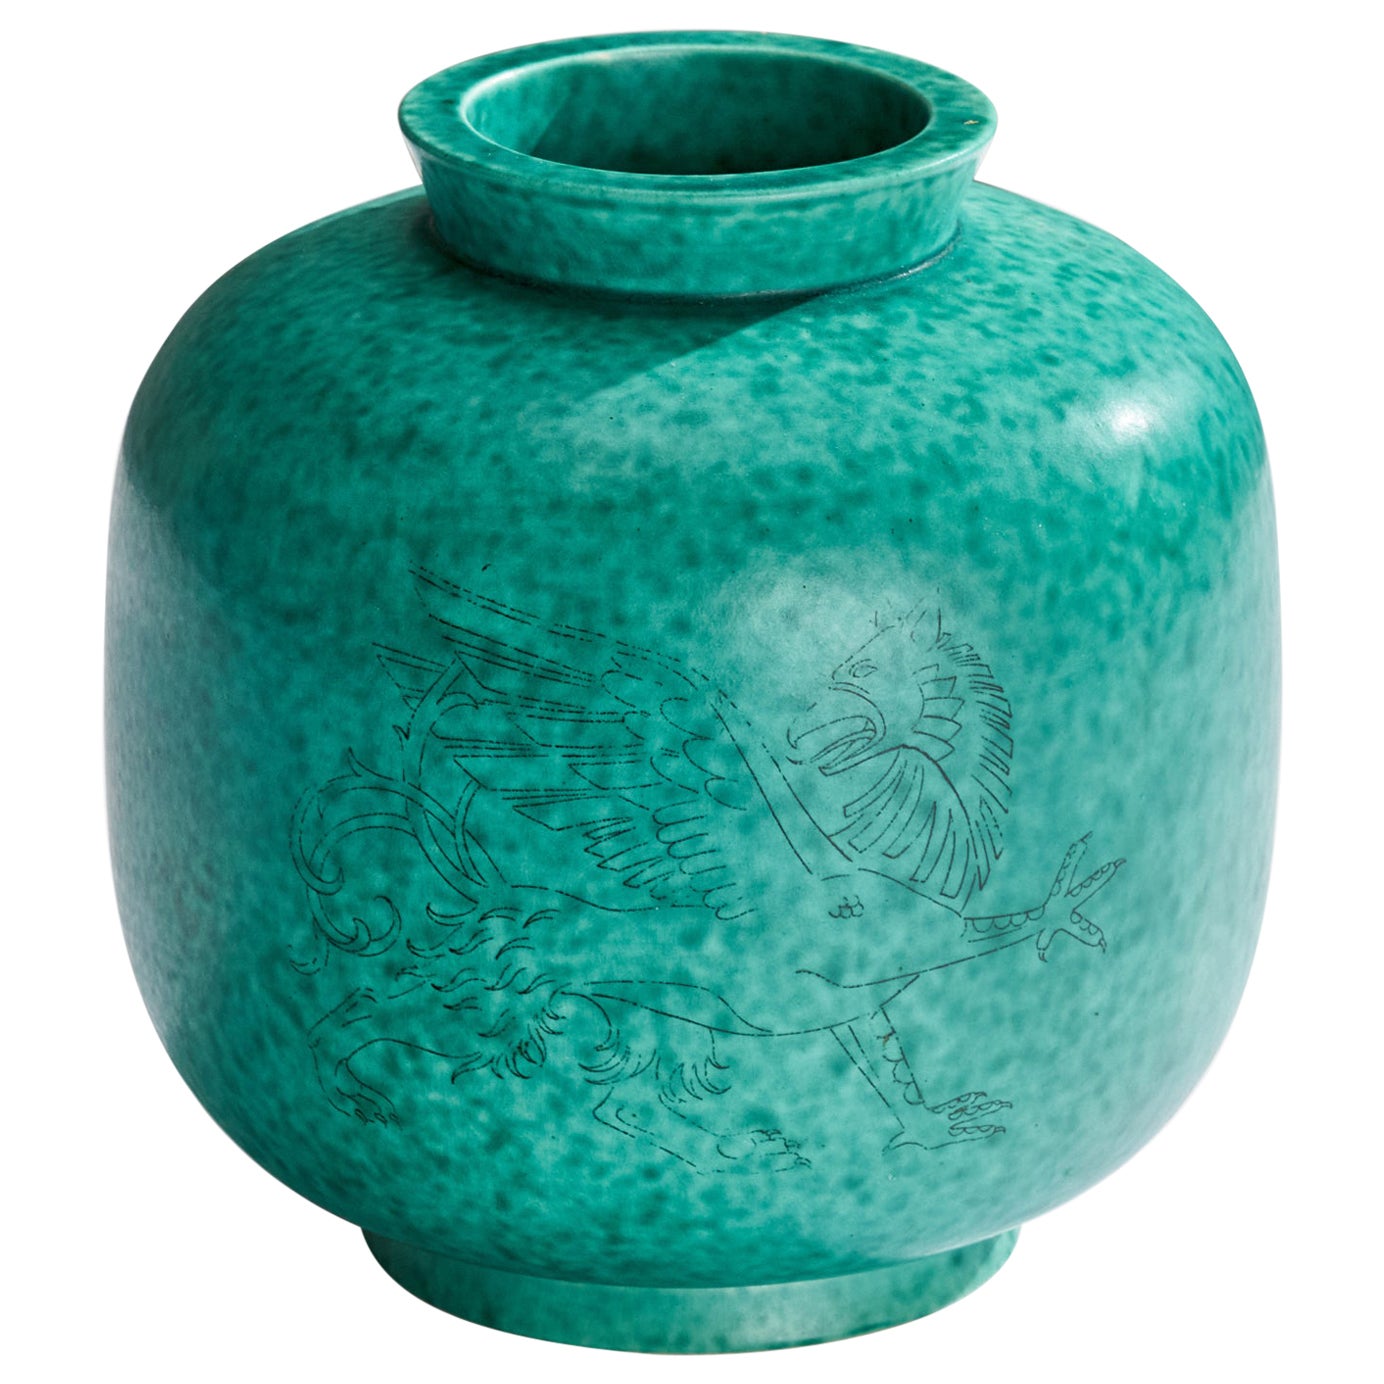 Wilhelm Kåge, Vase, Stoneware, Sweden, 1950s